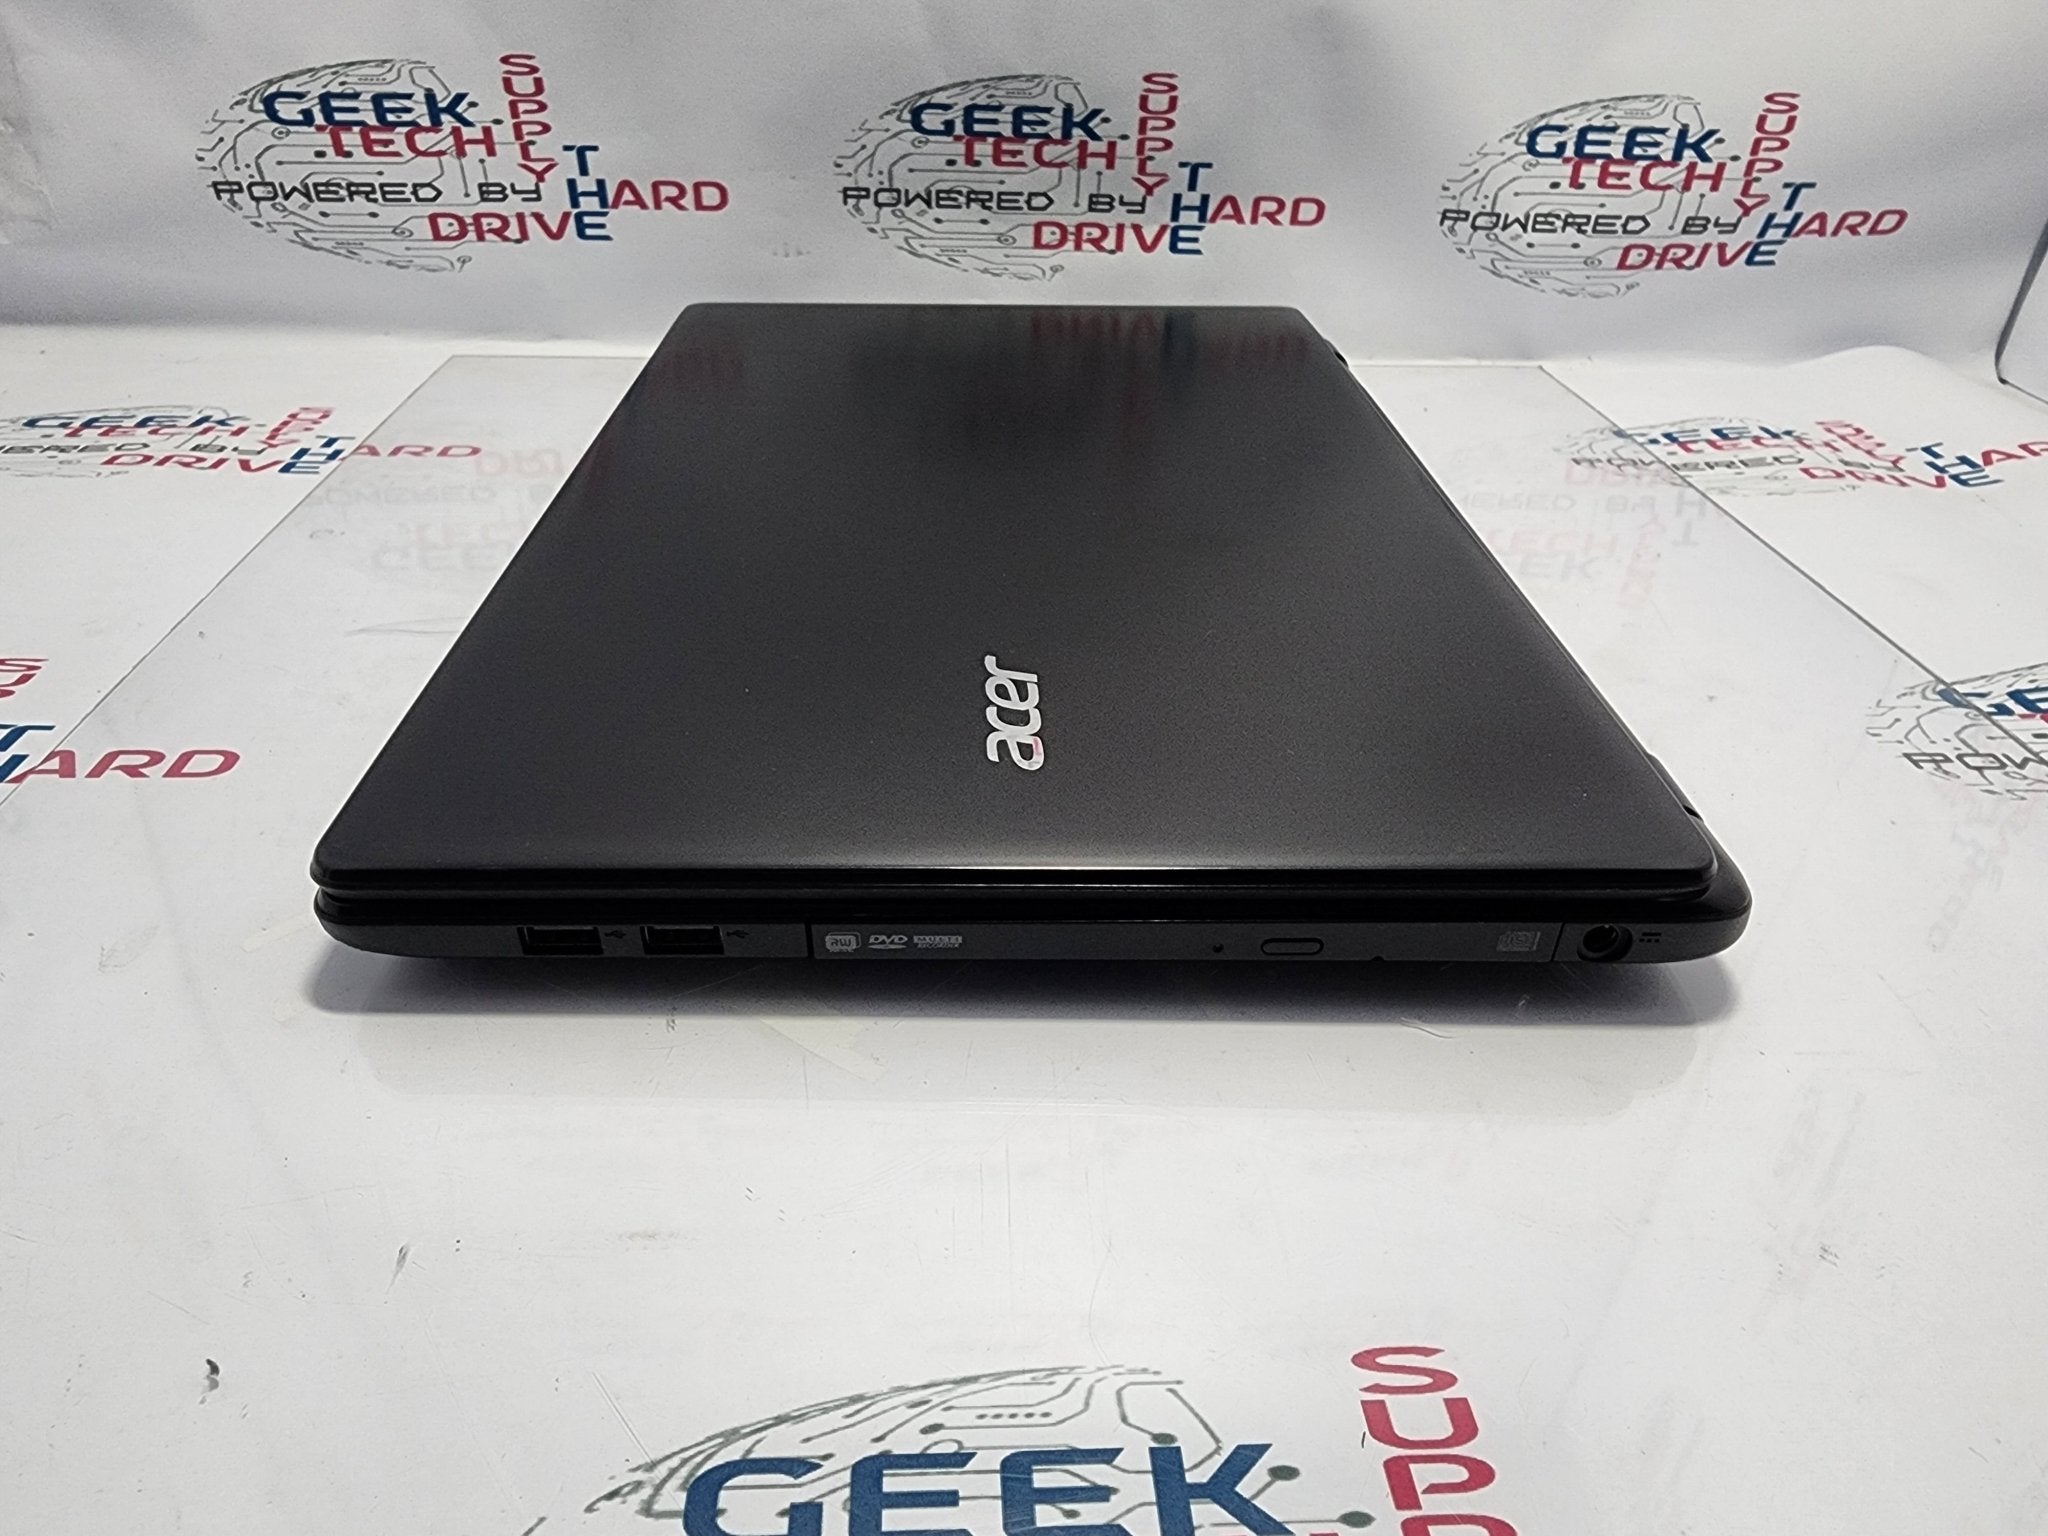 Acer Aspire E5-521 Black Laptop Windows 11 - E5-6110 Quad - 500gb SSD - 12gb RAM | B Grade - Geek Tech